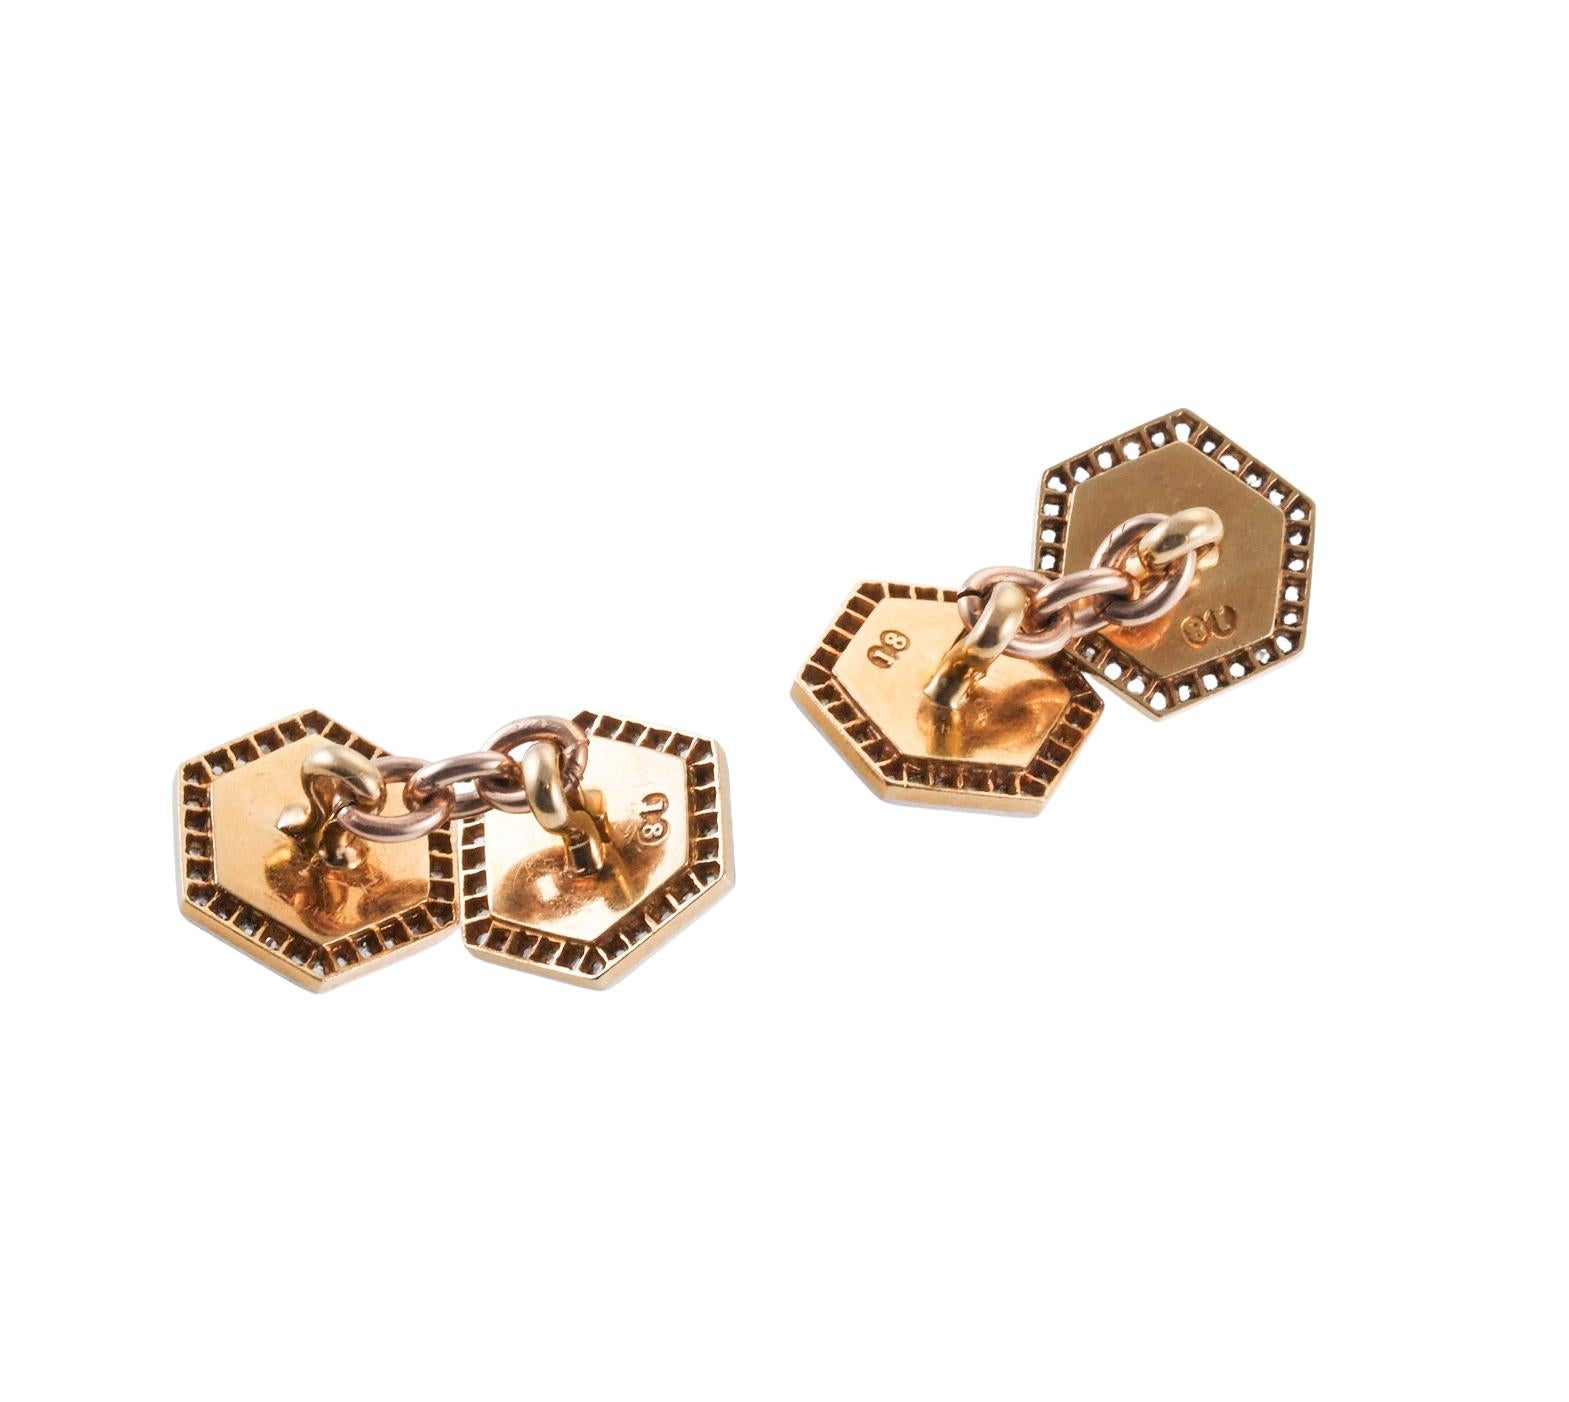 Paar klassische Manschettenknöpfe aus englischem 18-karätigem Gold im Art-Déco-Stil, jeweils mit einem facettierten Onyx in der Mitte, umgeben von Diamanten im Rosenschliff. Jede Platte misst 12 x 12 mm. Es fehlt ein kleiner Diamant. Auf den